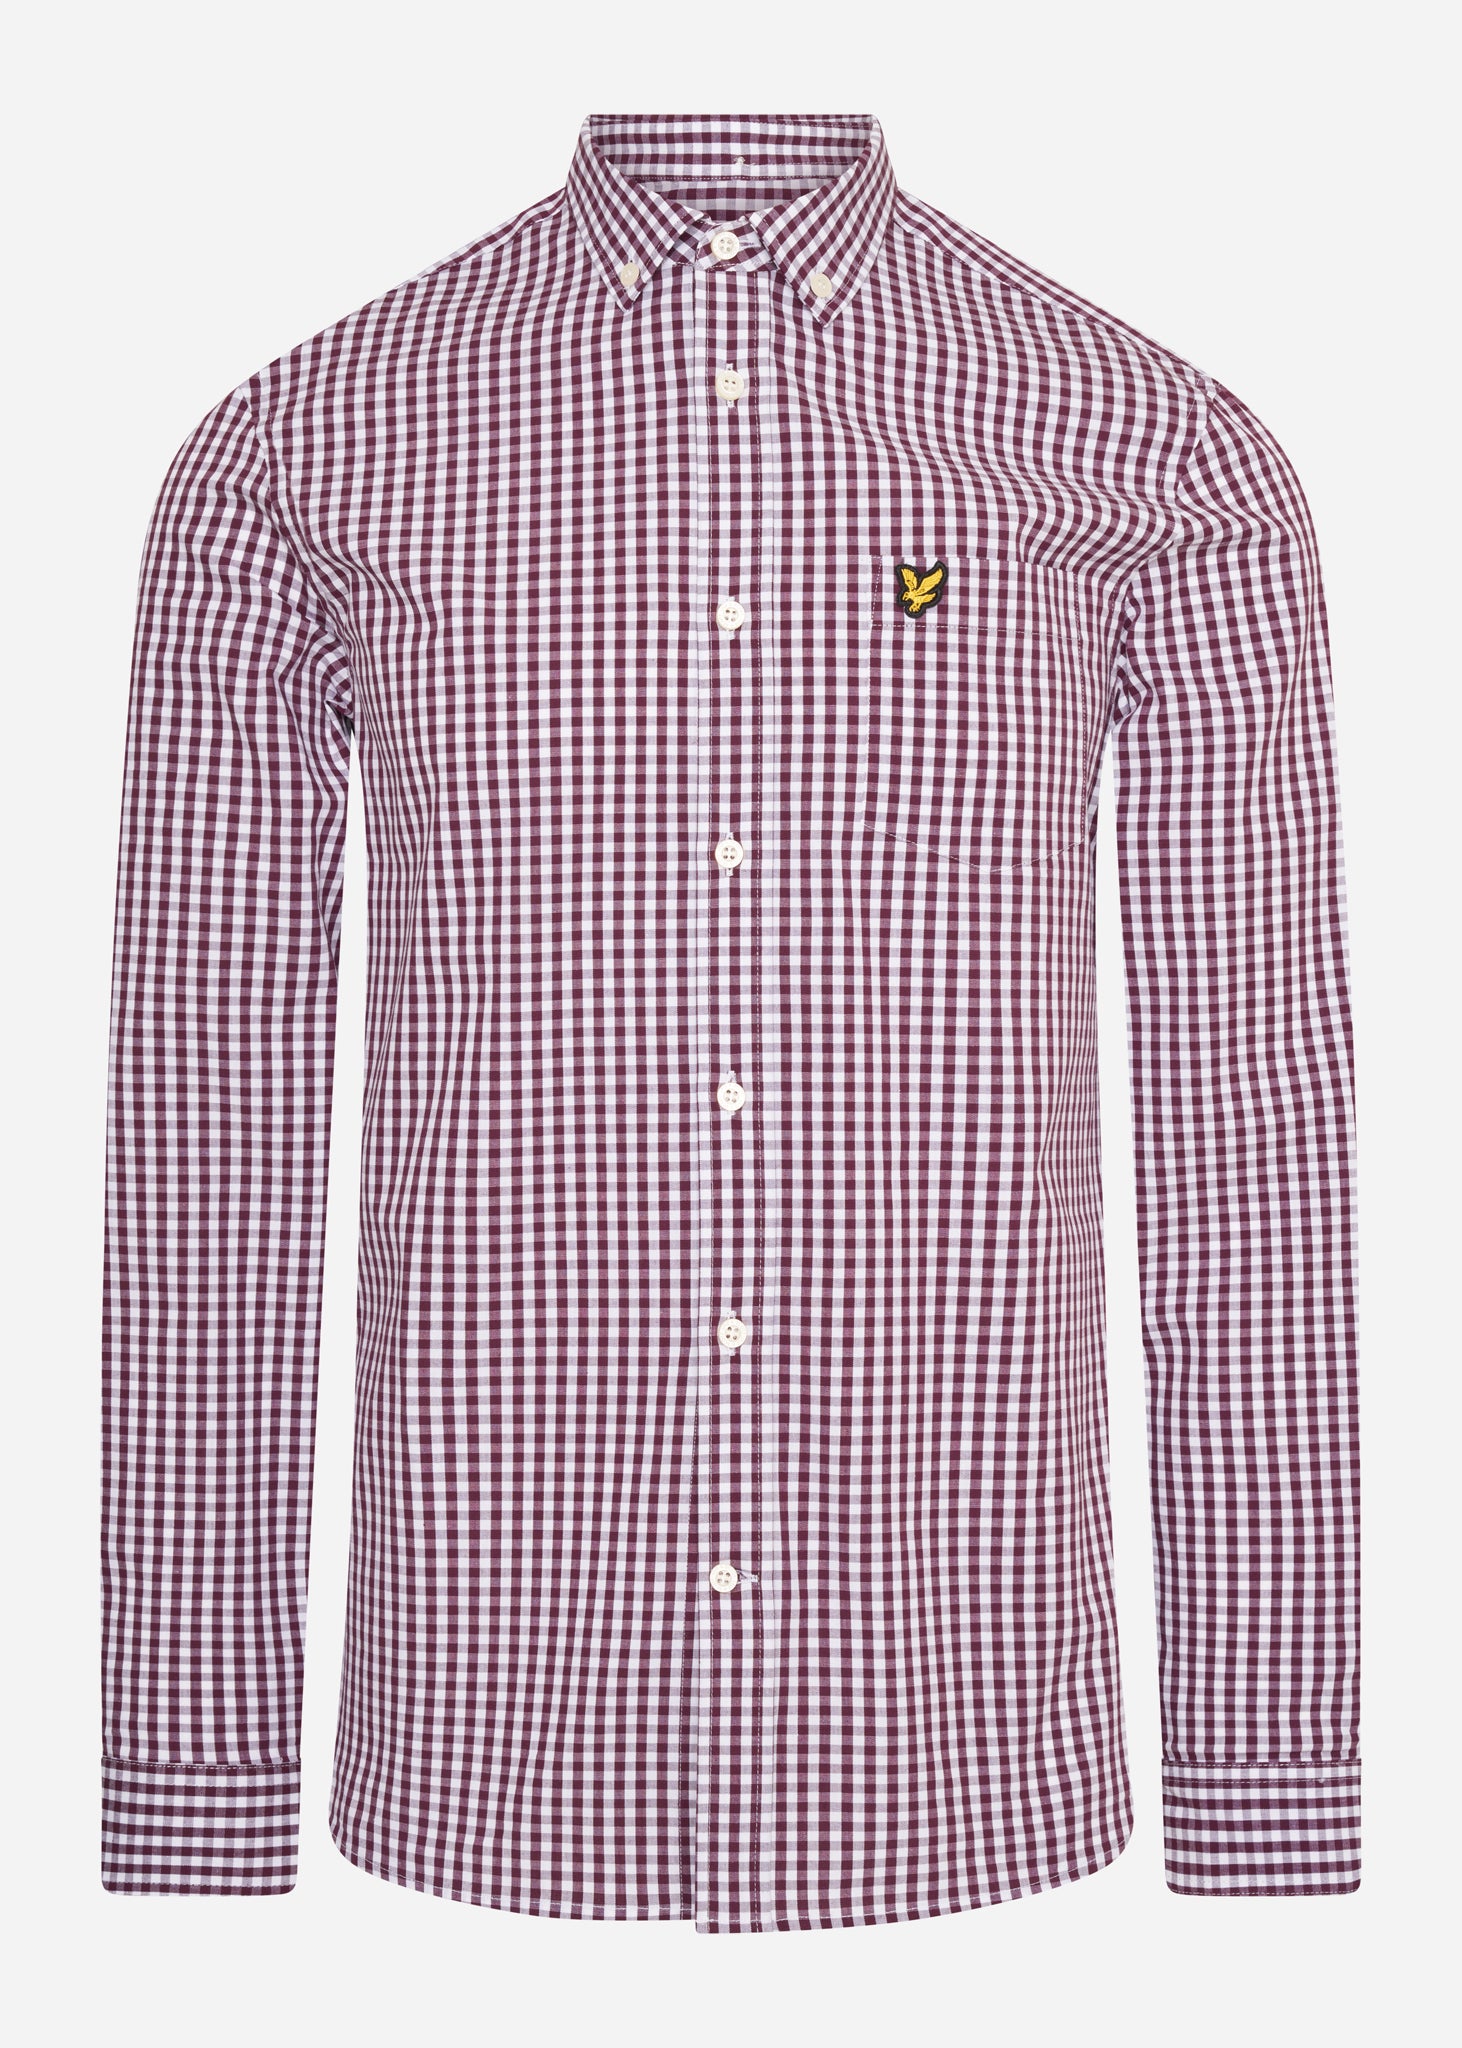 Lyle & Scott Overhemden  Slim fit gingham shirt - burgundy white 